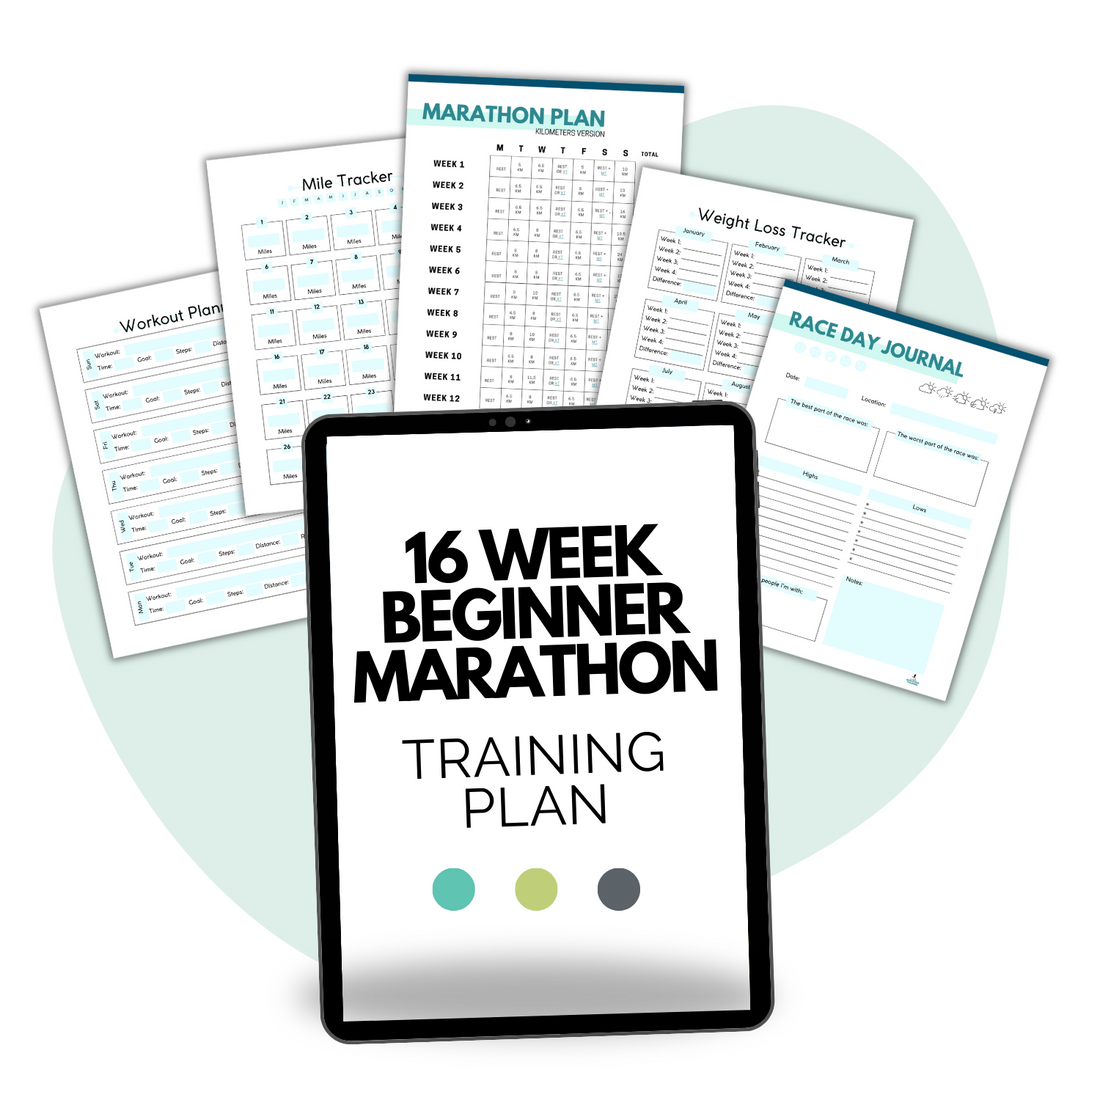 16 Week Beginner Marathon Training Plan with PDF mockup